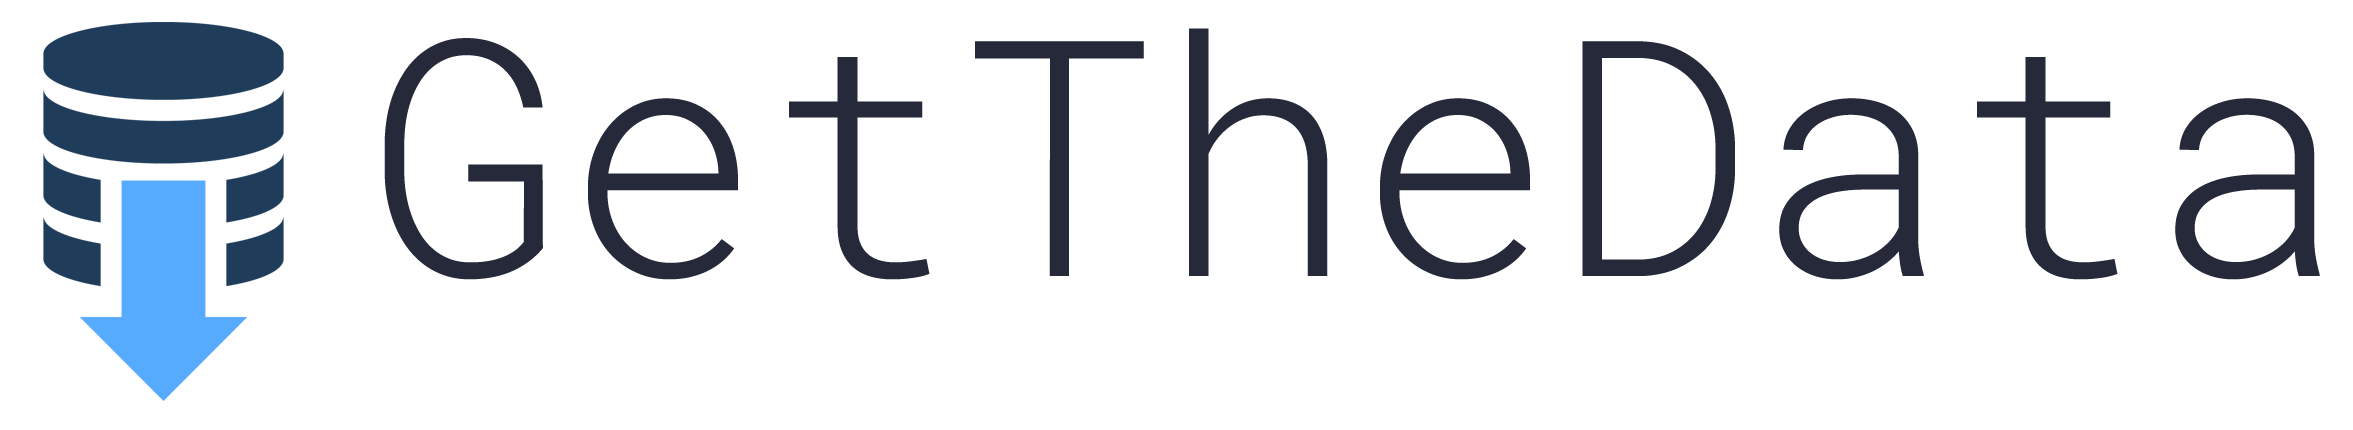 GetTheData logo